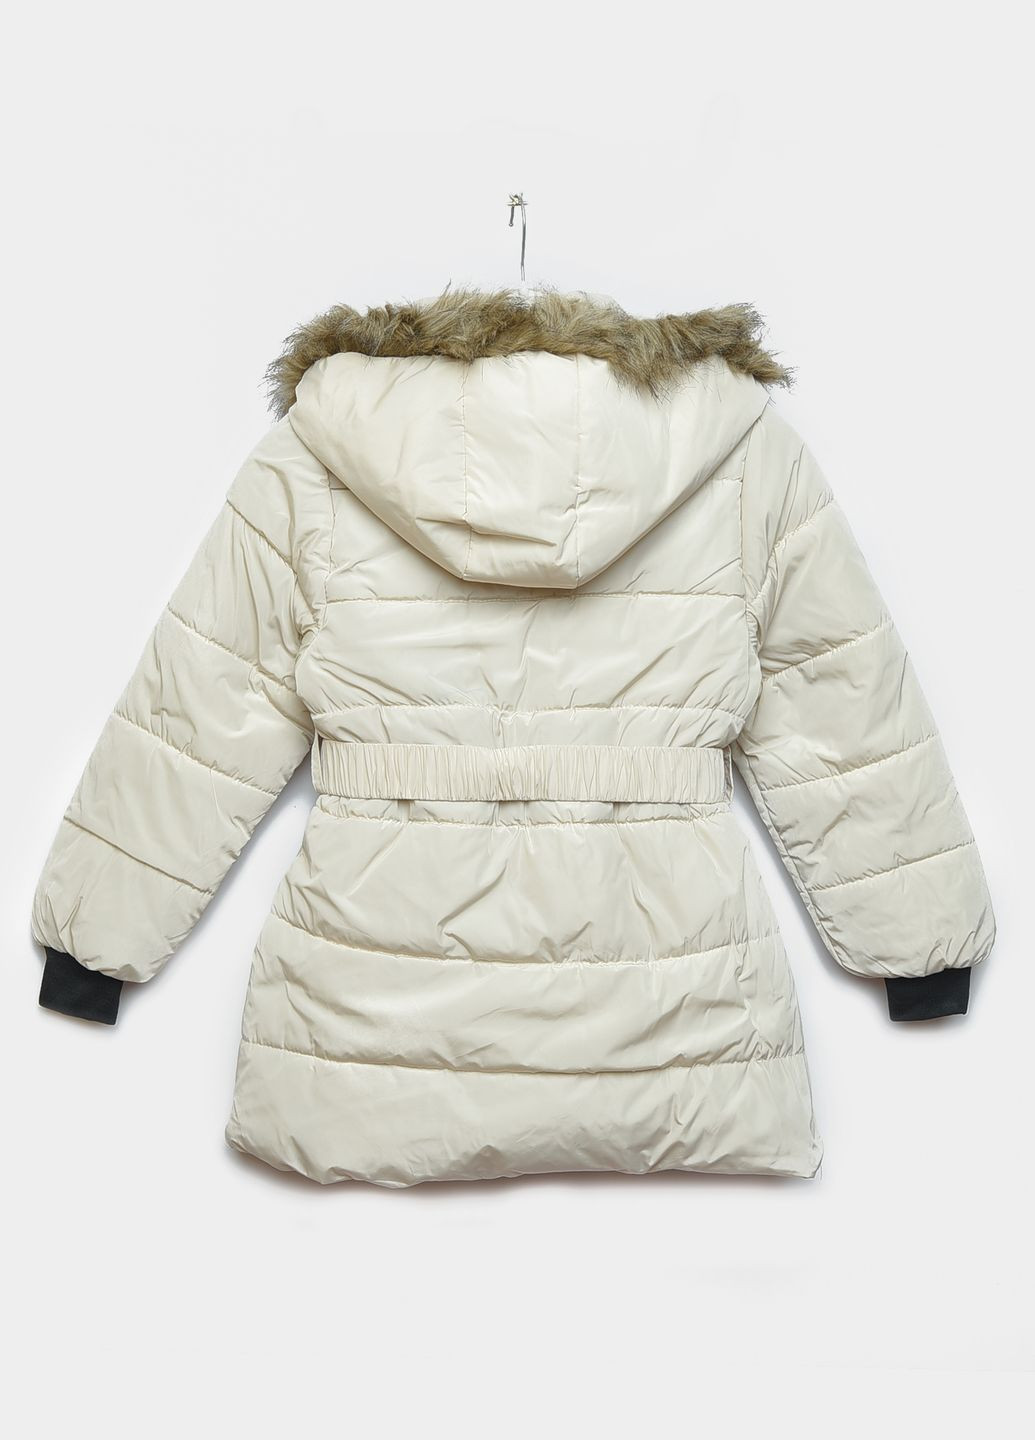 Молочная зимняя куртка детская зимняя для девочки молочного цвета Let's Shop